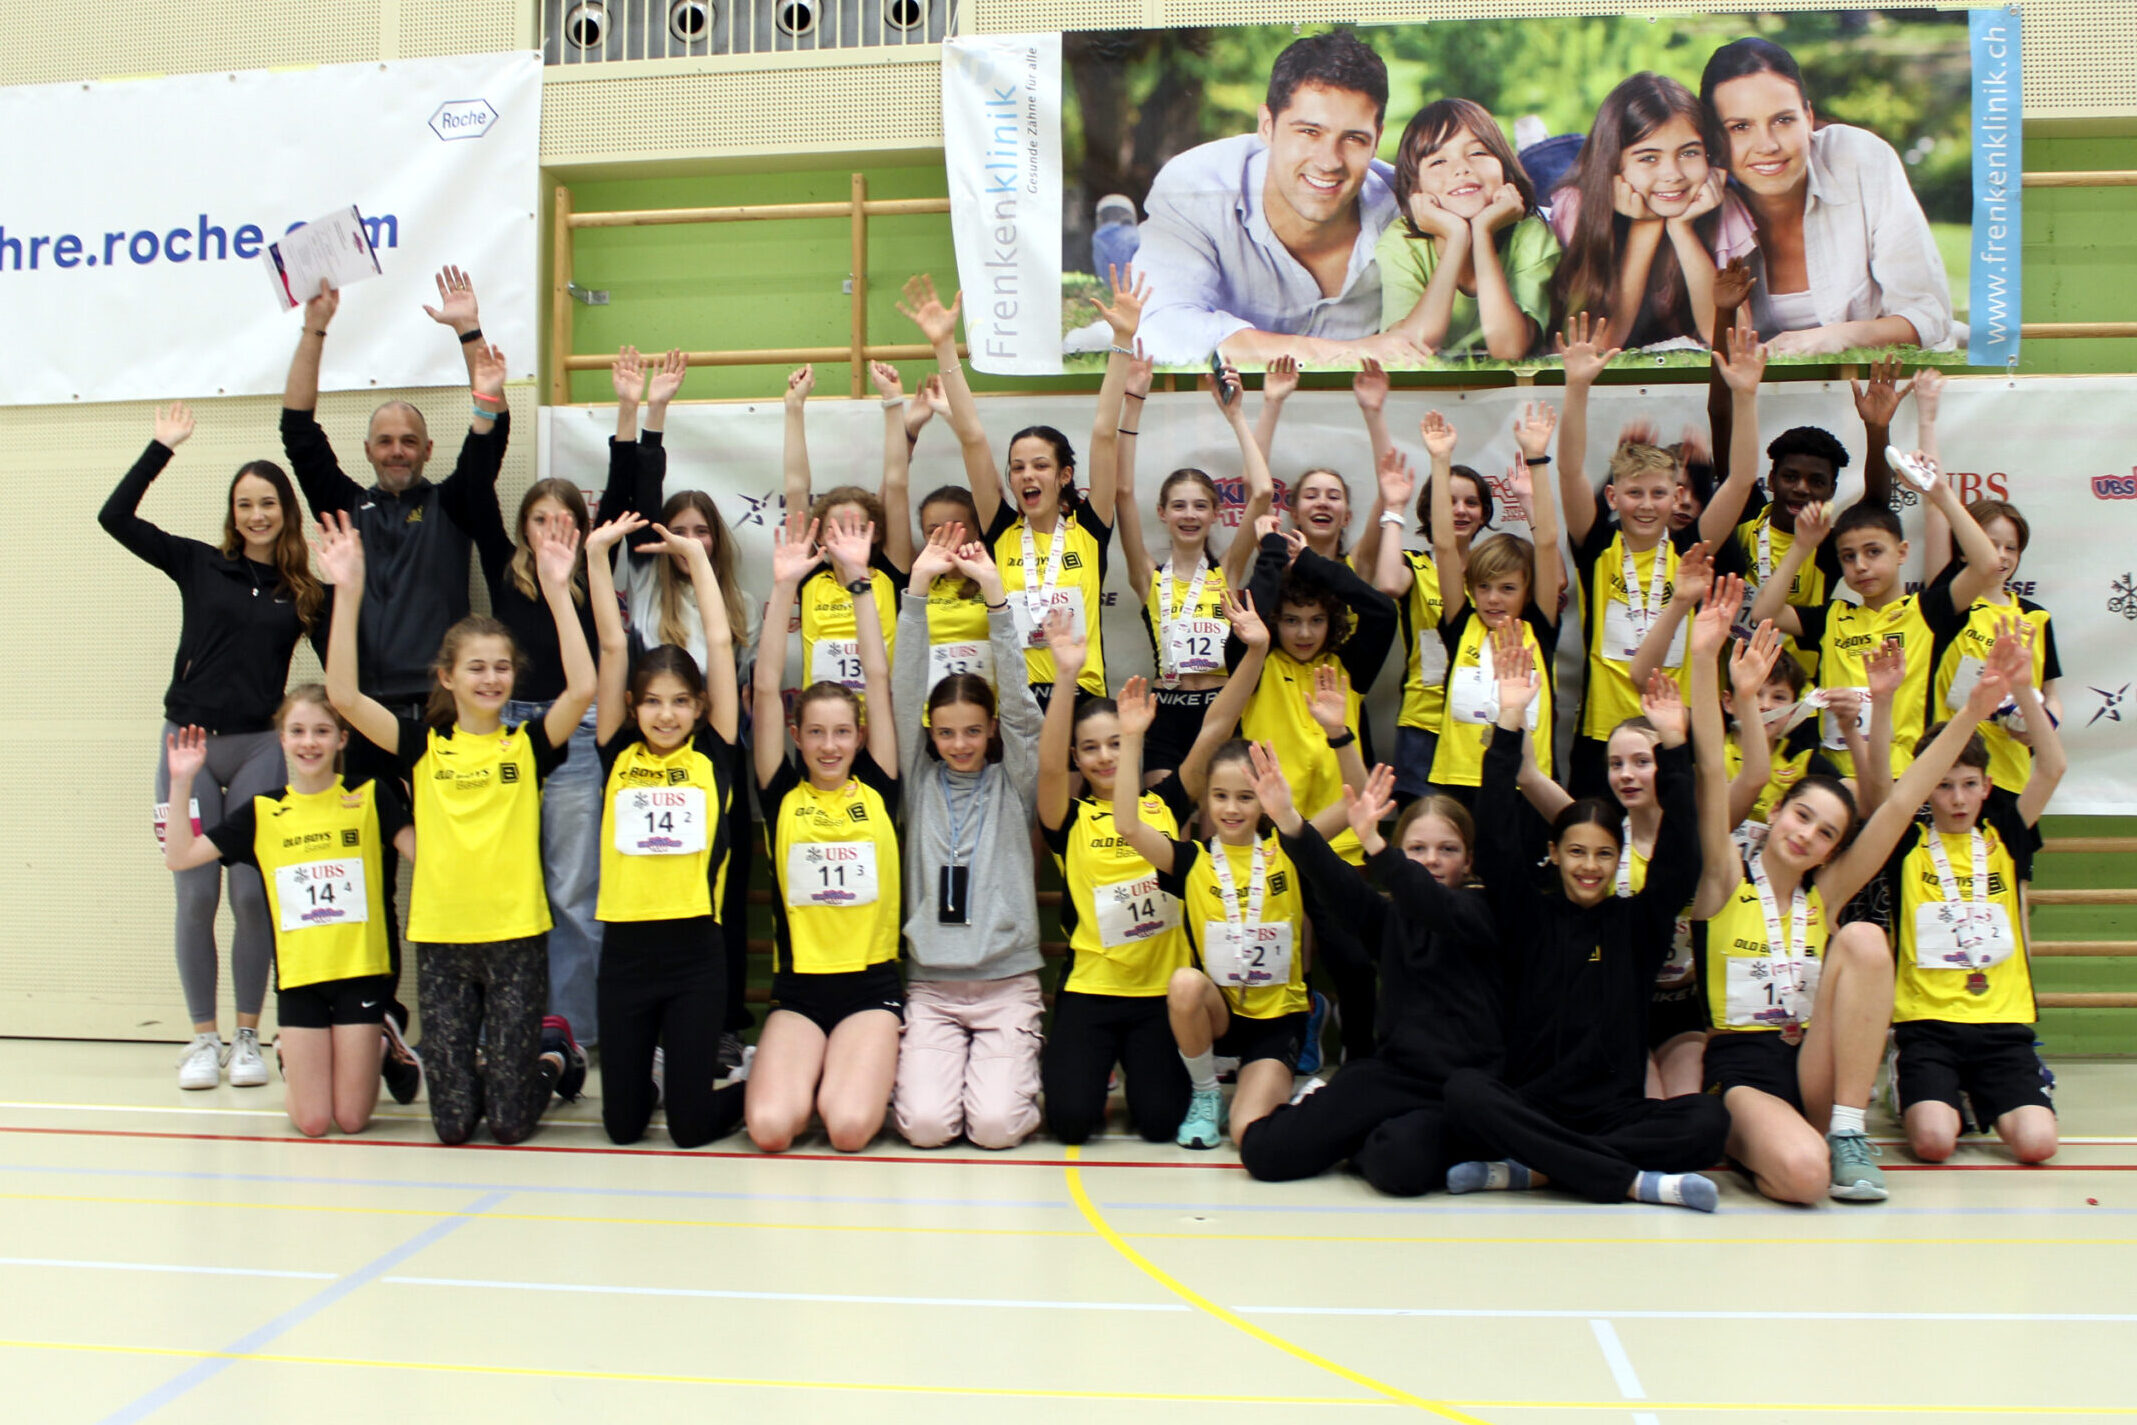 Drei Teams qualifizieren sich für den UBS Kids Cup Team Schweizer Final